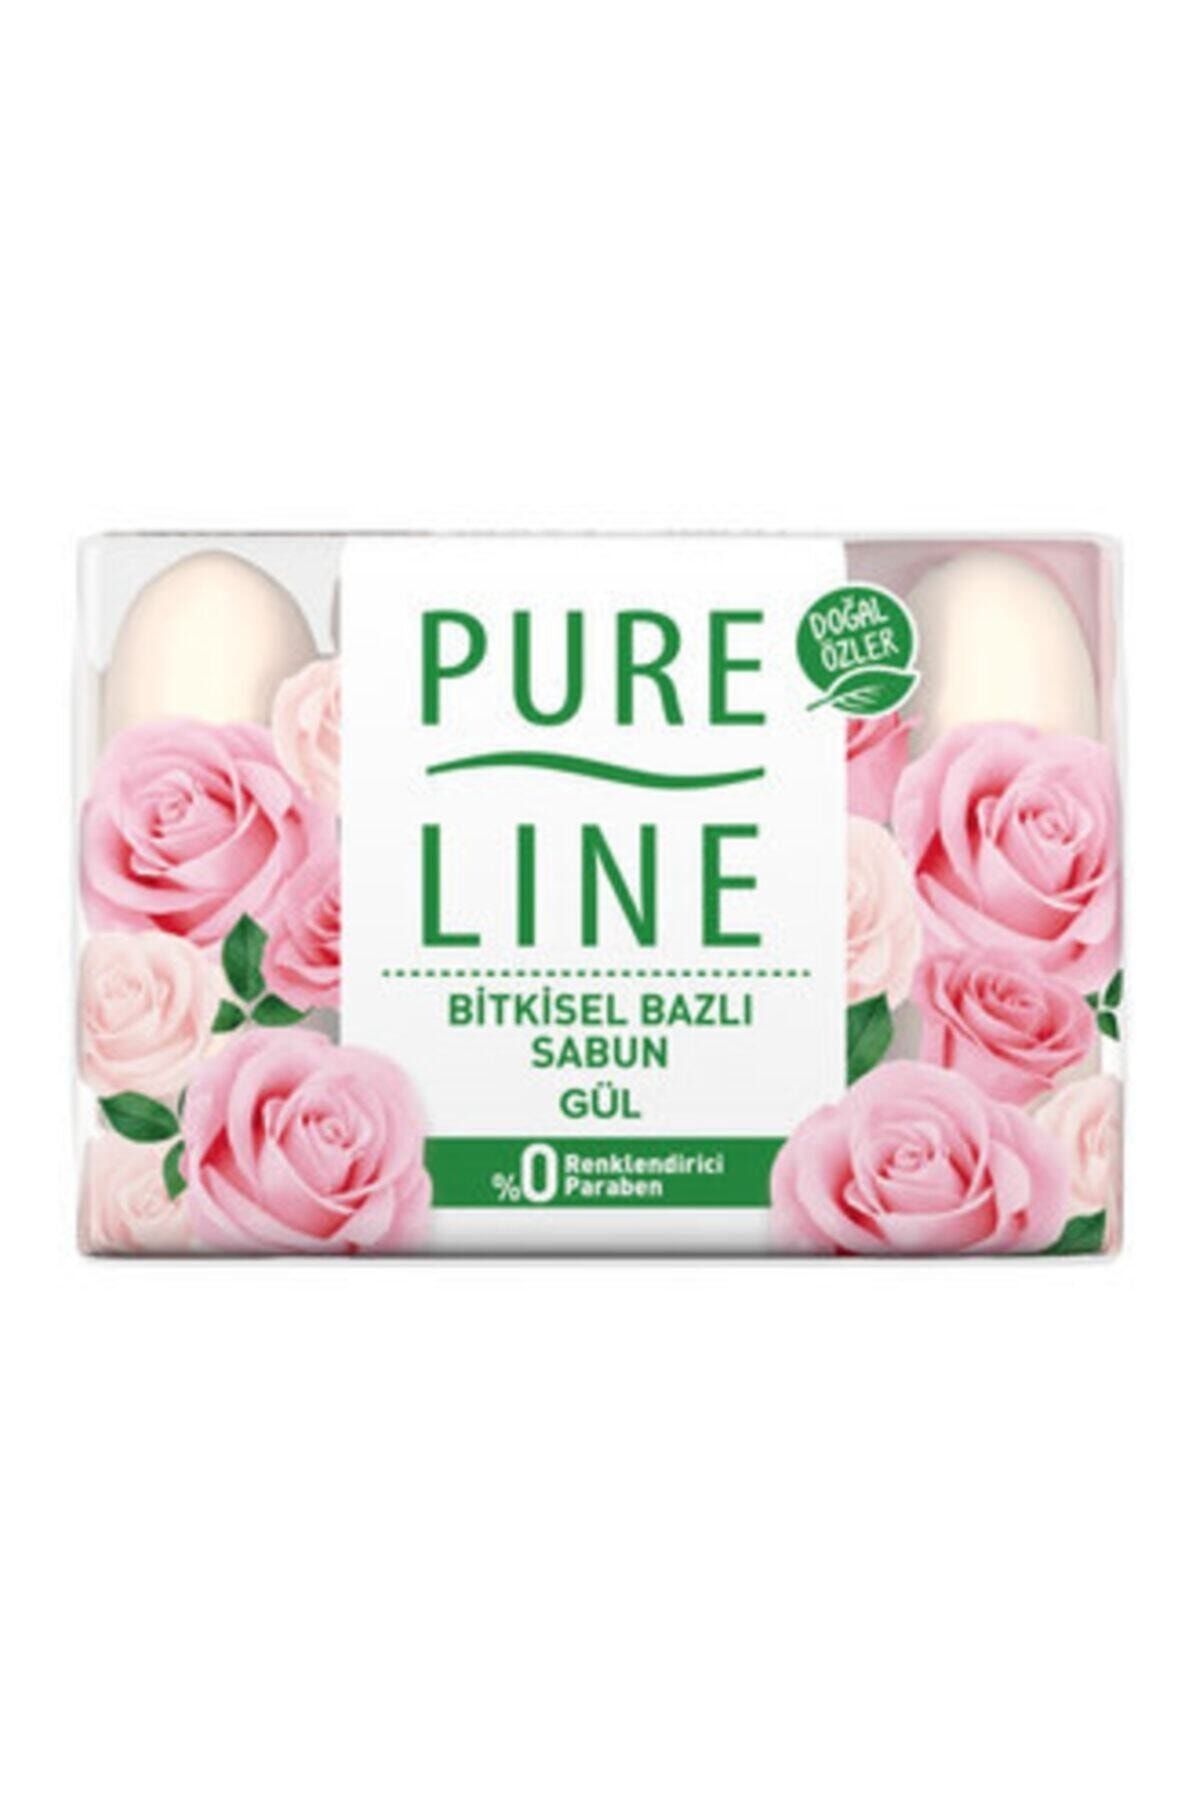 Pure Line Gül Katı Sabun 4x70 G